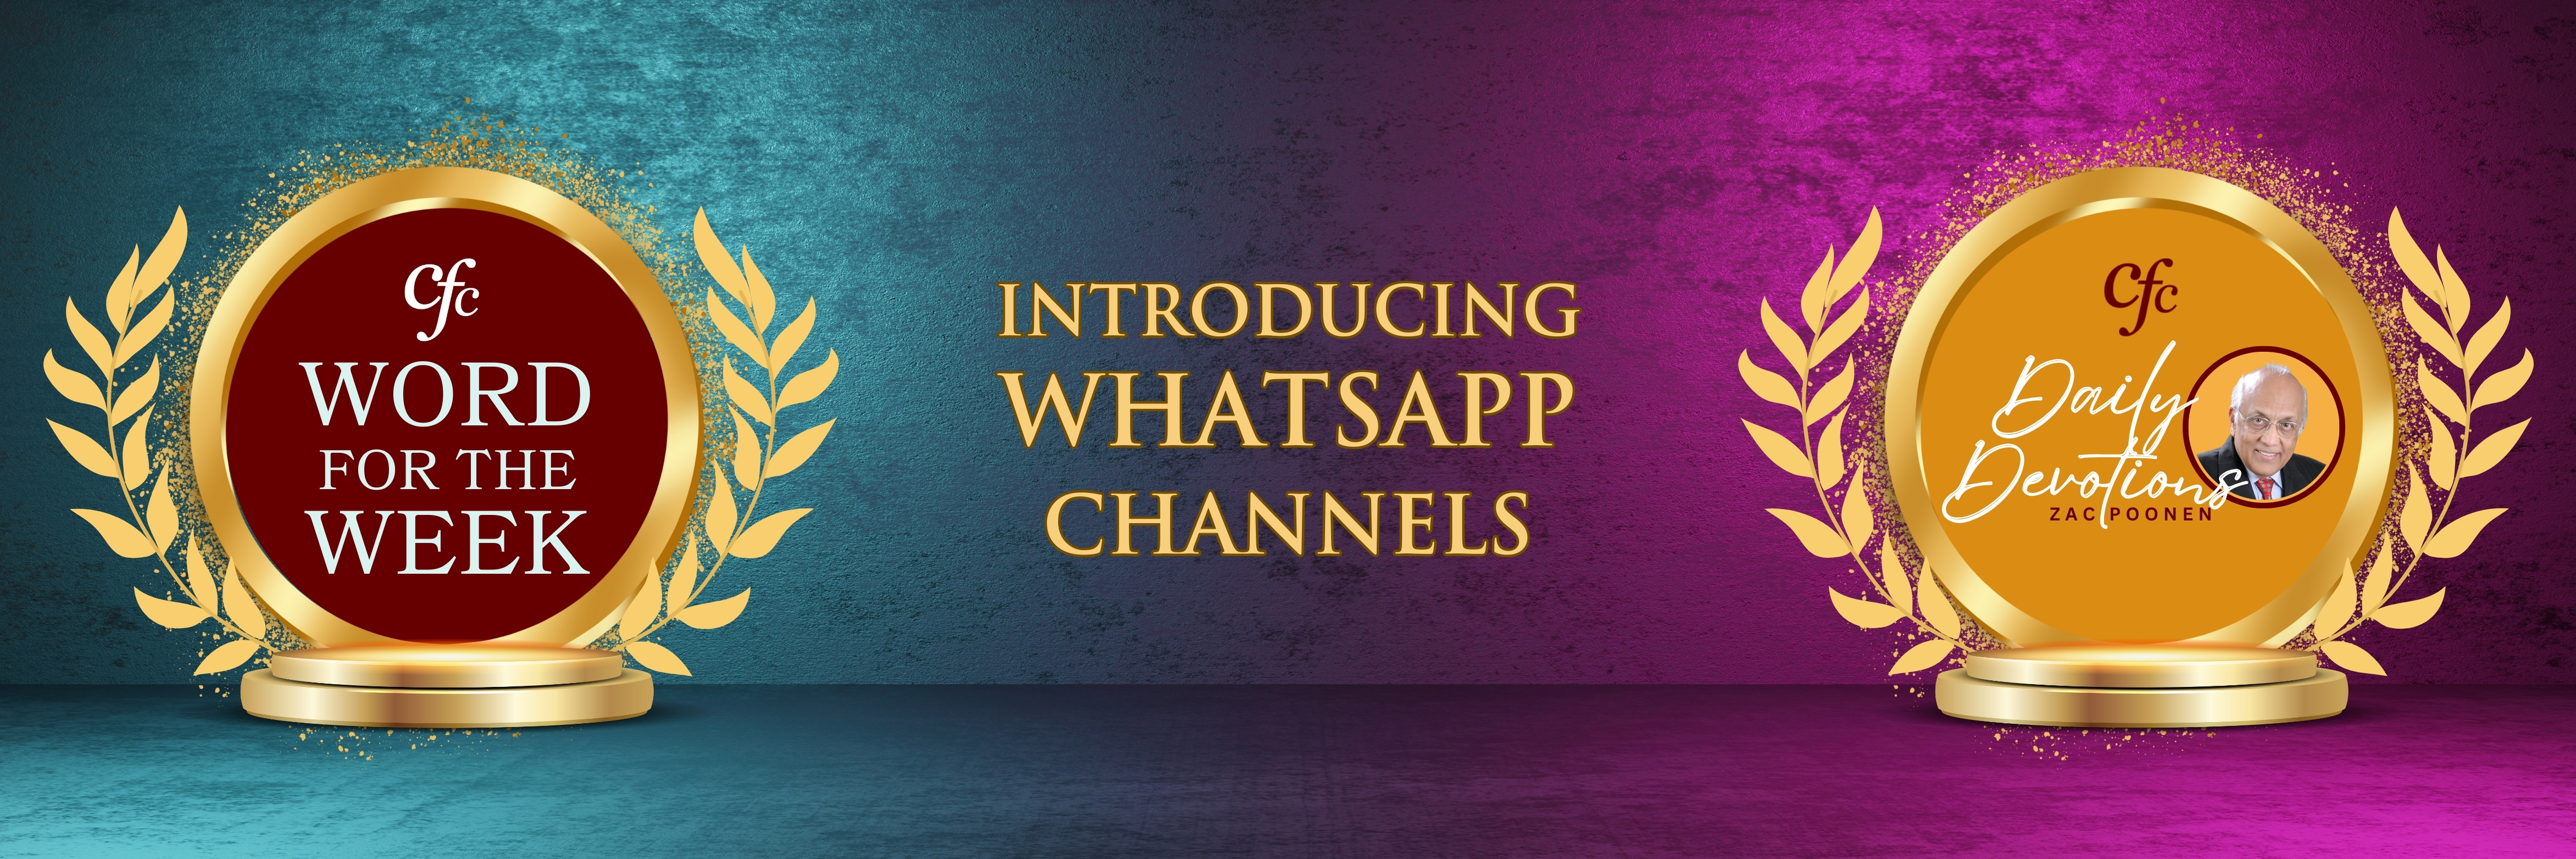 WhatsApp Channels - Social media